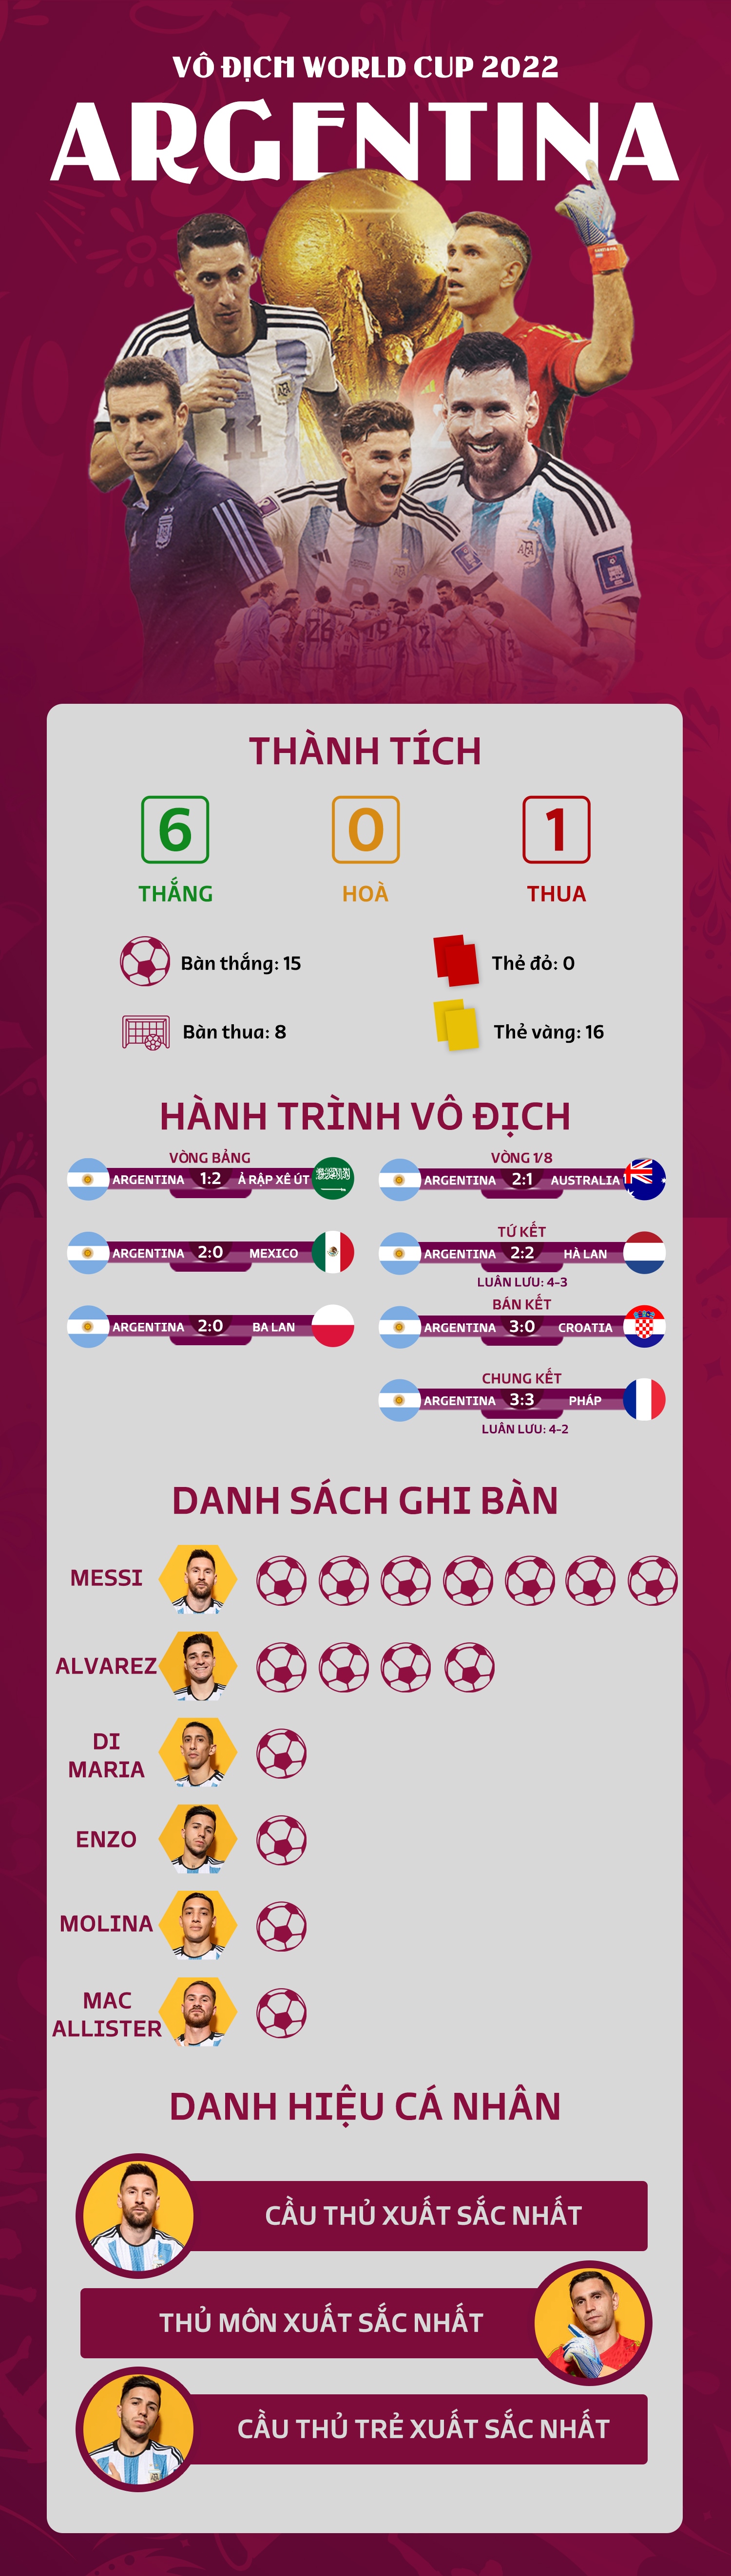 Infographic: Nhìn lại hành trình vô địch World Cup 2022 của Argentina - Ảnh 1.